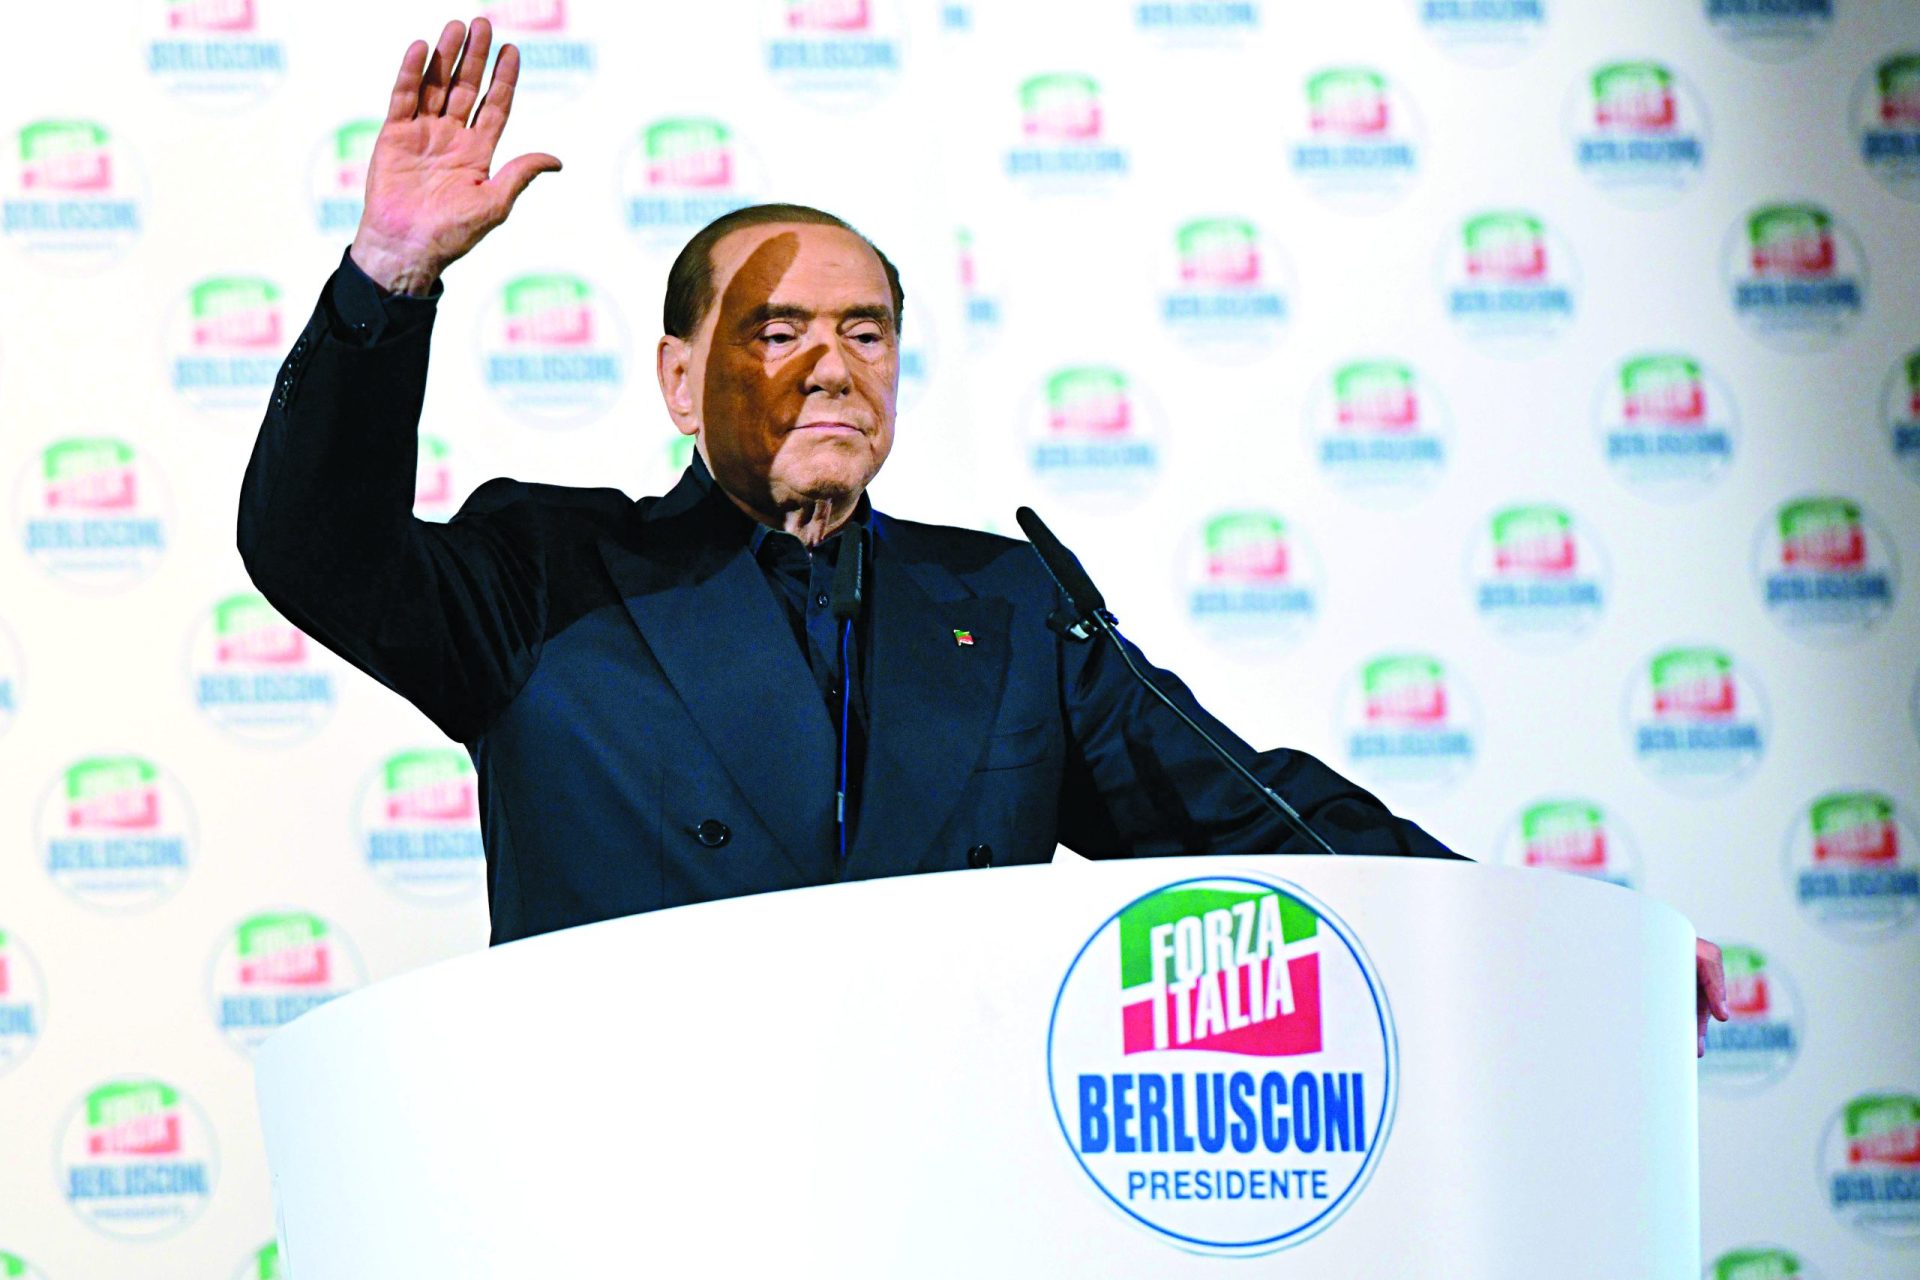 Itália. Berlusconi, o candidato da União Europeia